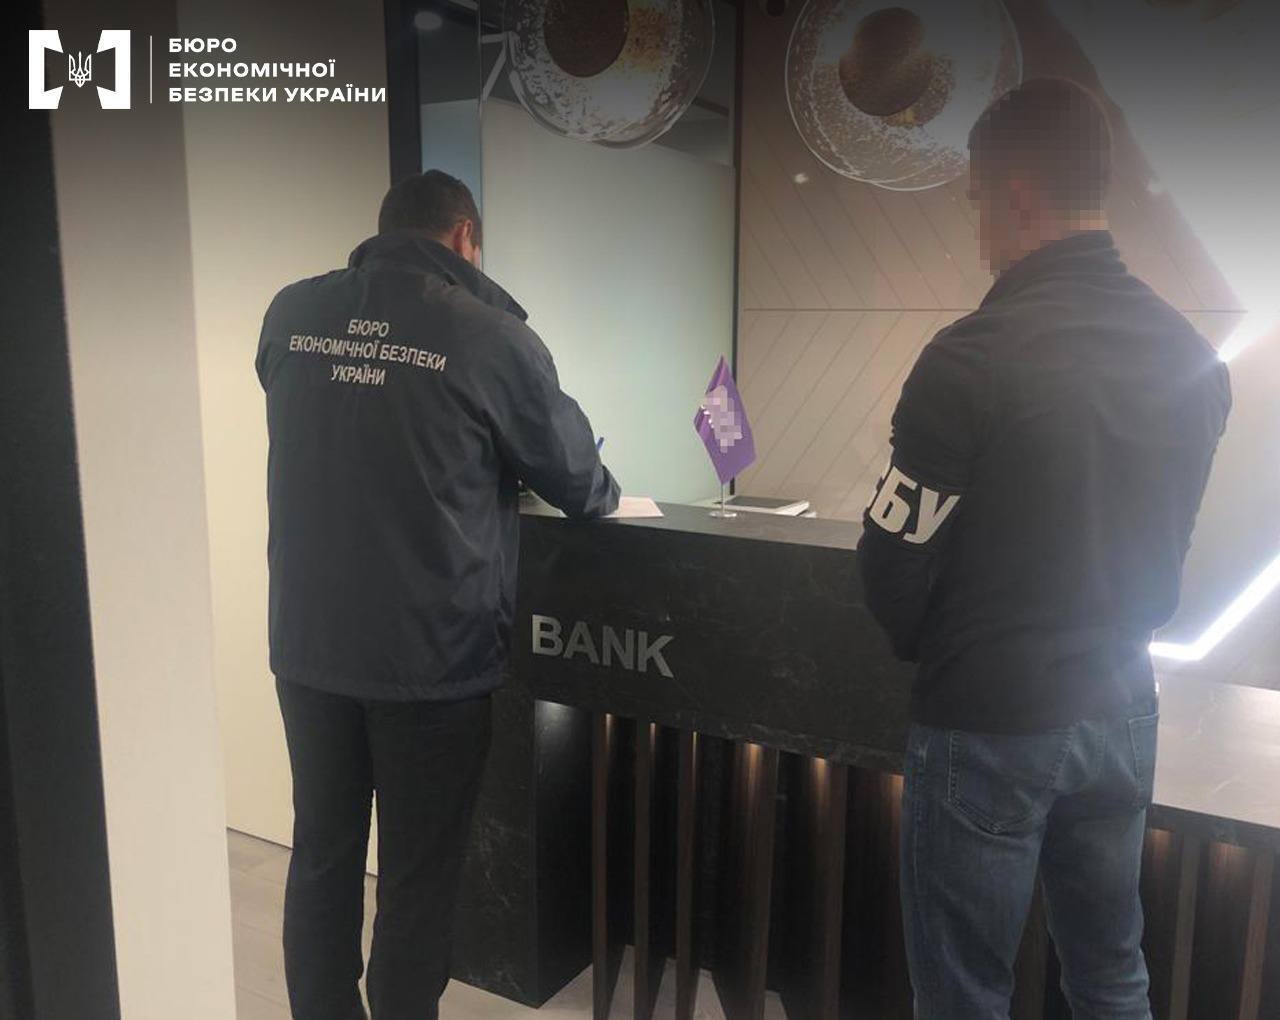 Известный украинский банк прятал от налоговой деньги для игорного бизнеса: в БЭБ раскрыли детали